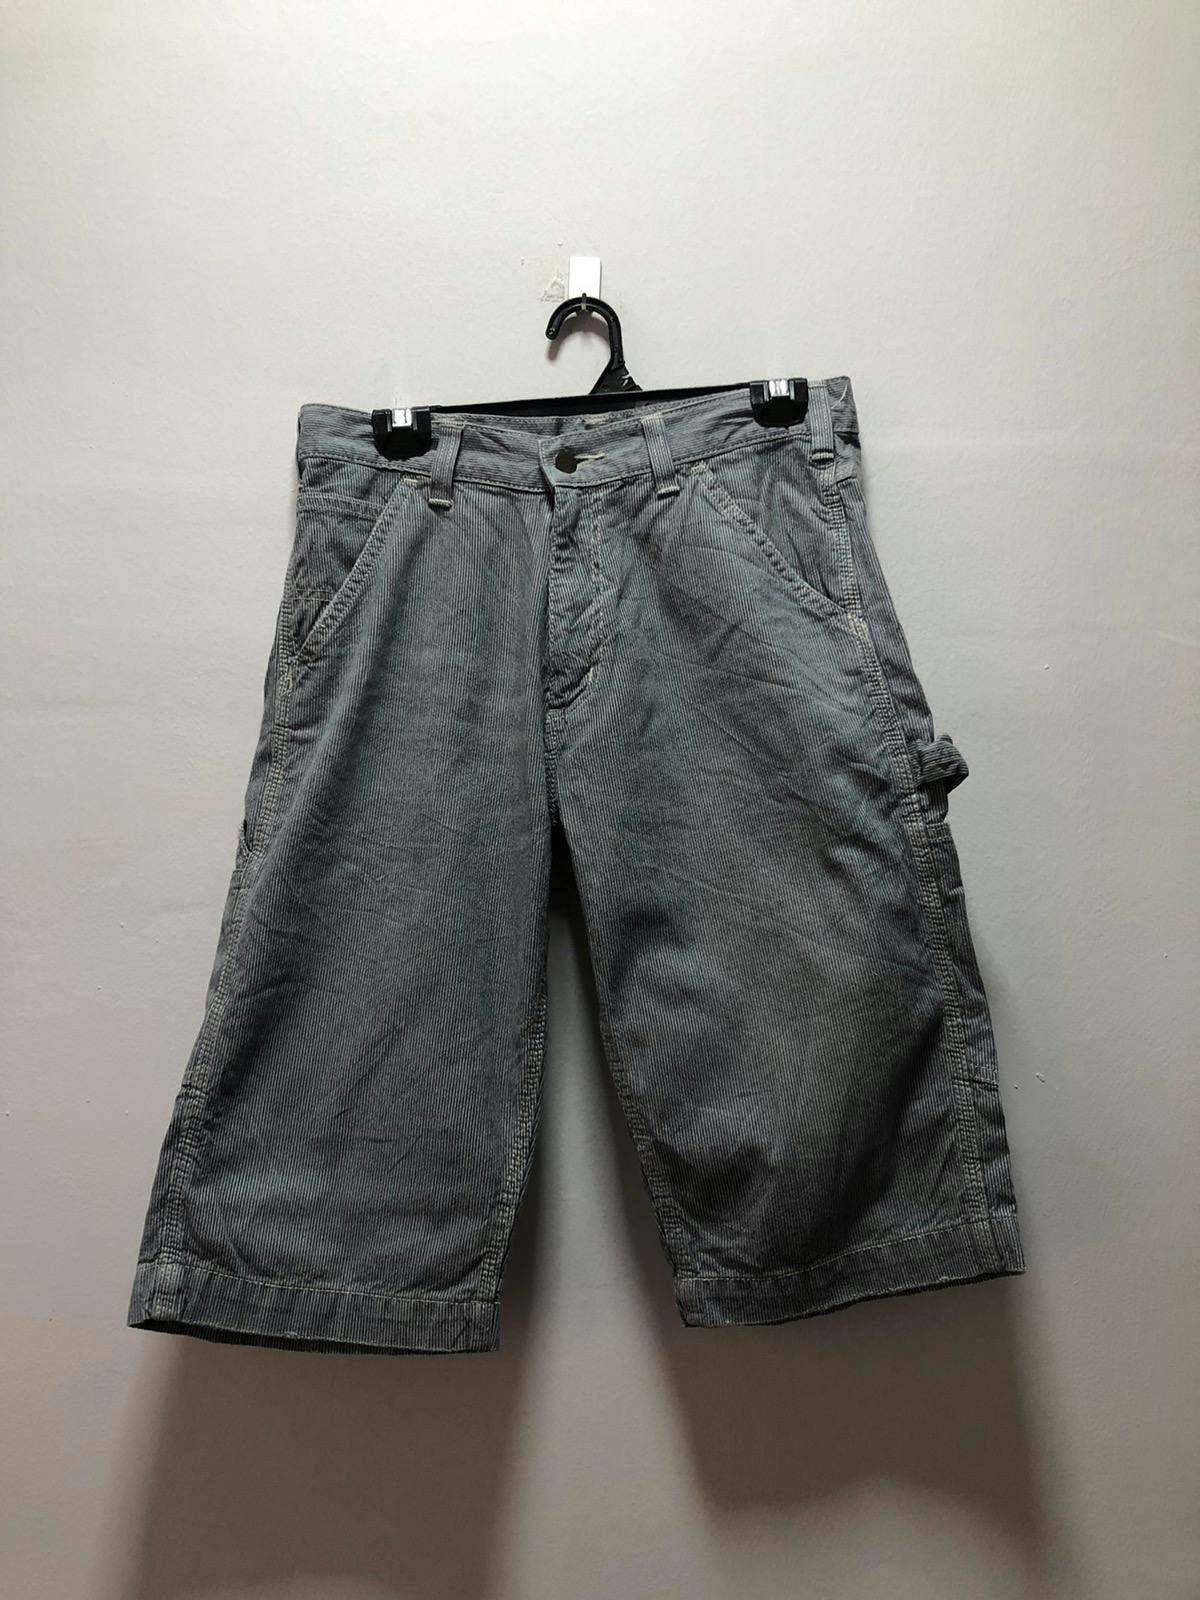 CARHARTT Short Pants Striped Work Wear - 2